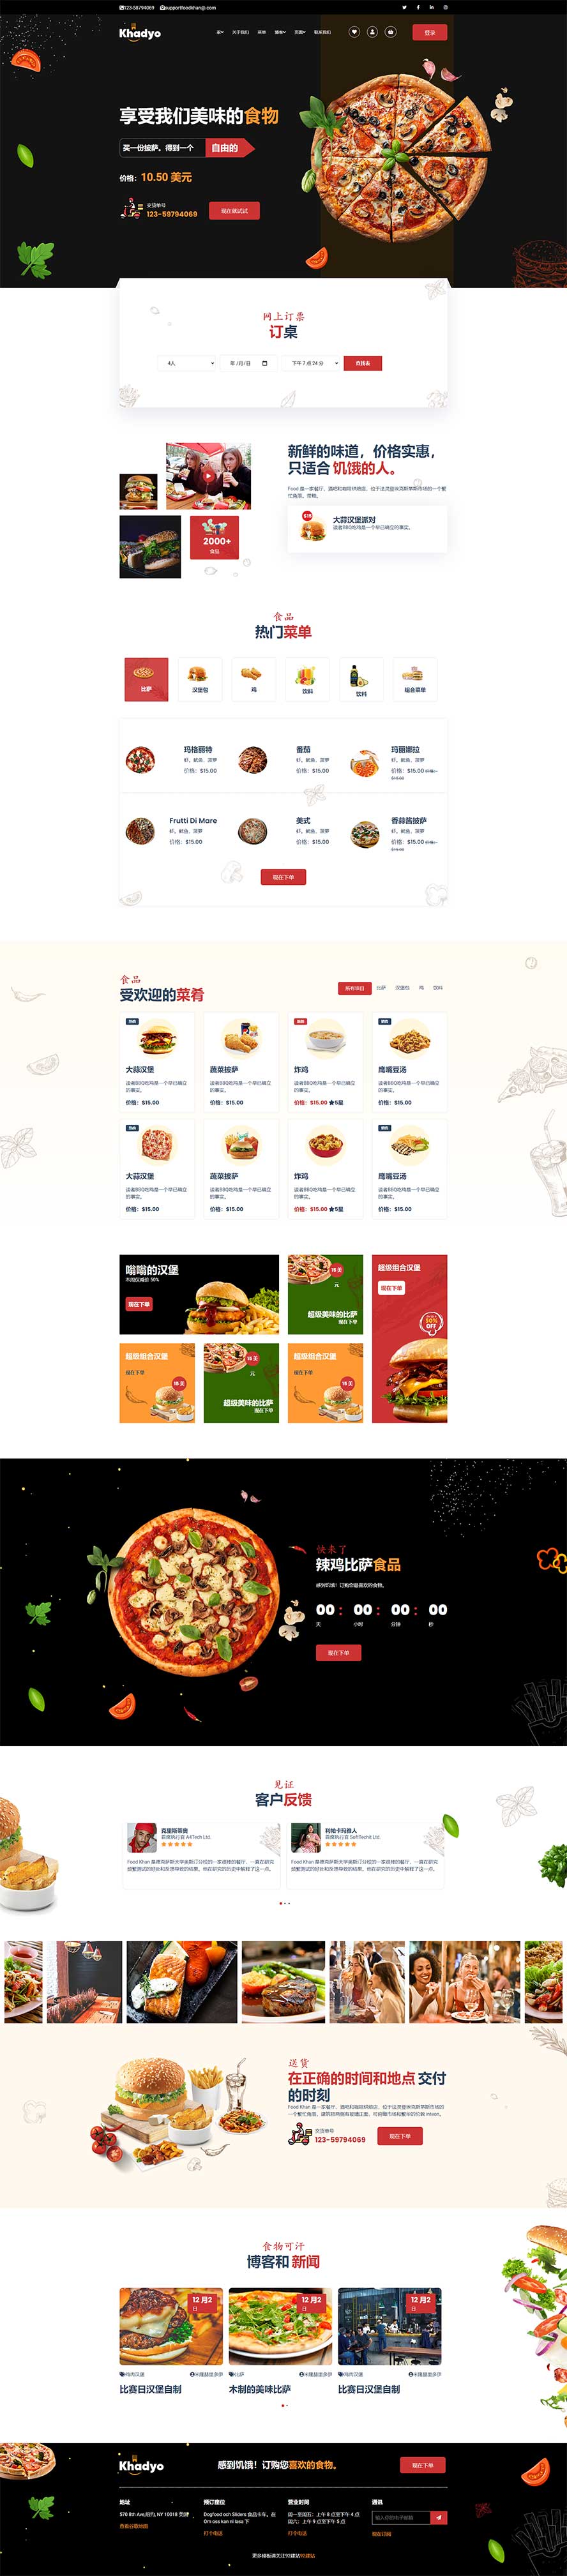 披萨网页模板,快餐厅网页模板,美食网页模板,外卖网页模板